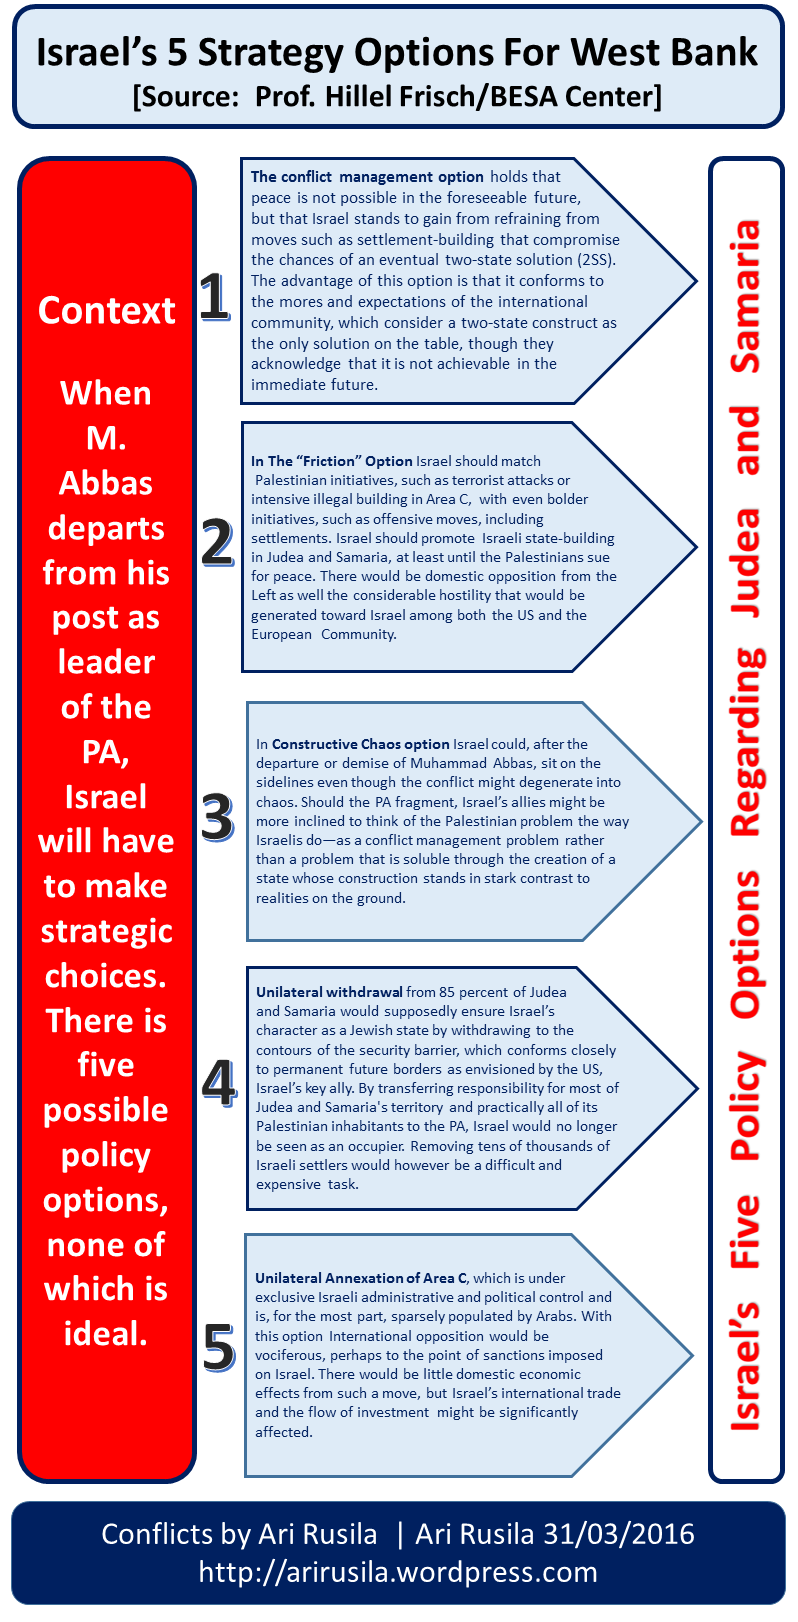 Israel’s 5 Strategy Options Regarding West Bank After Abbas [Source: Prof. Hillel Frisch/BESA Center]